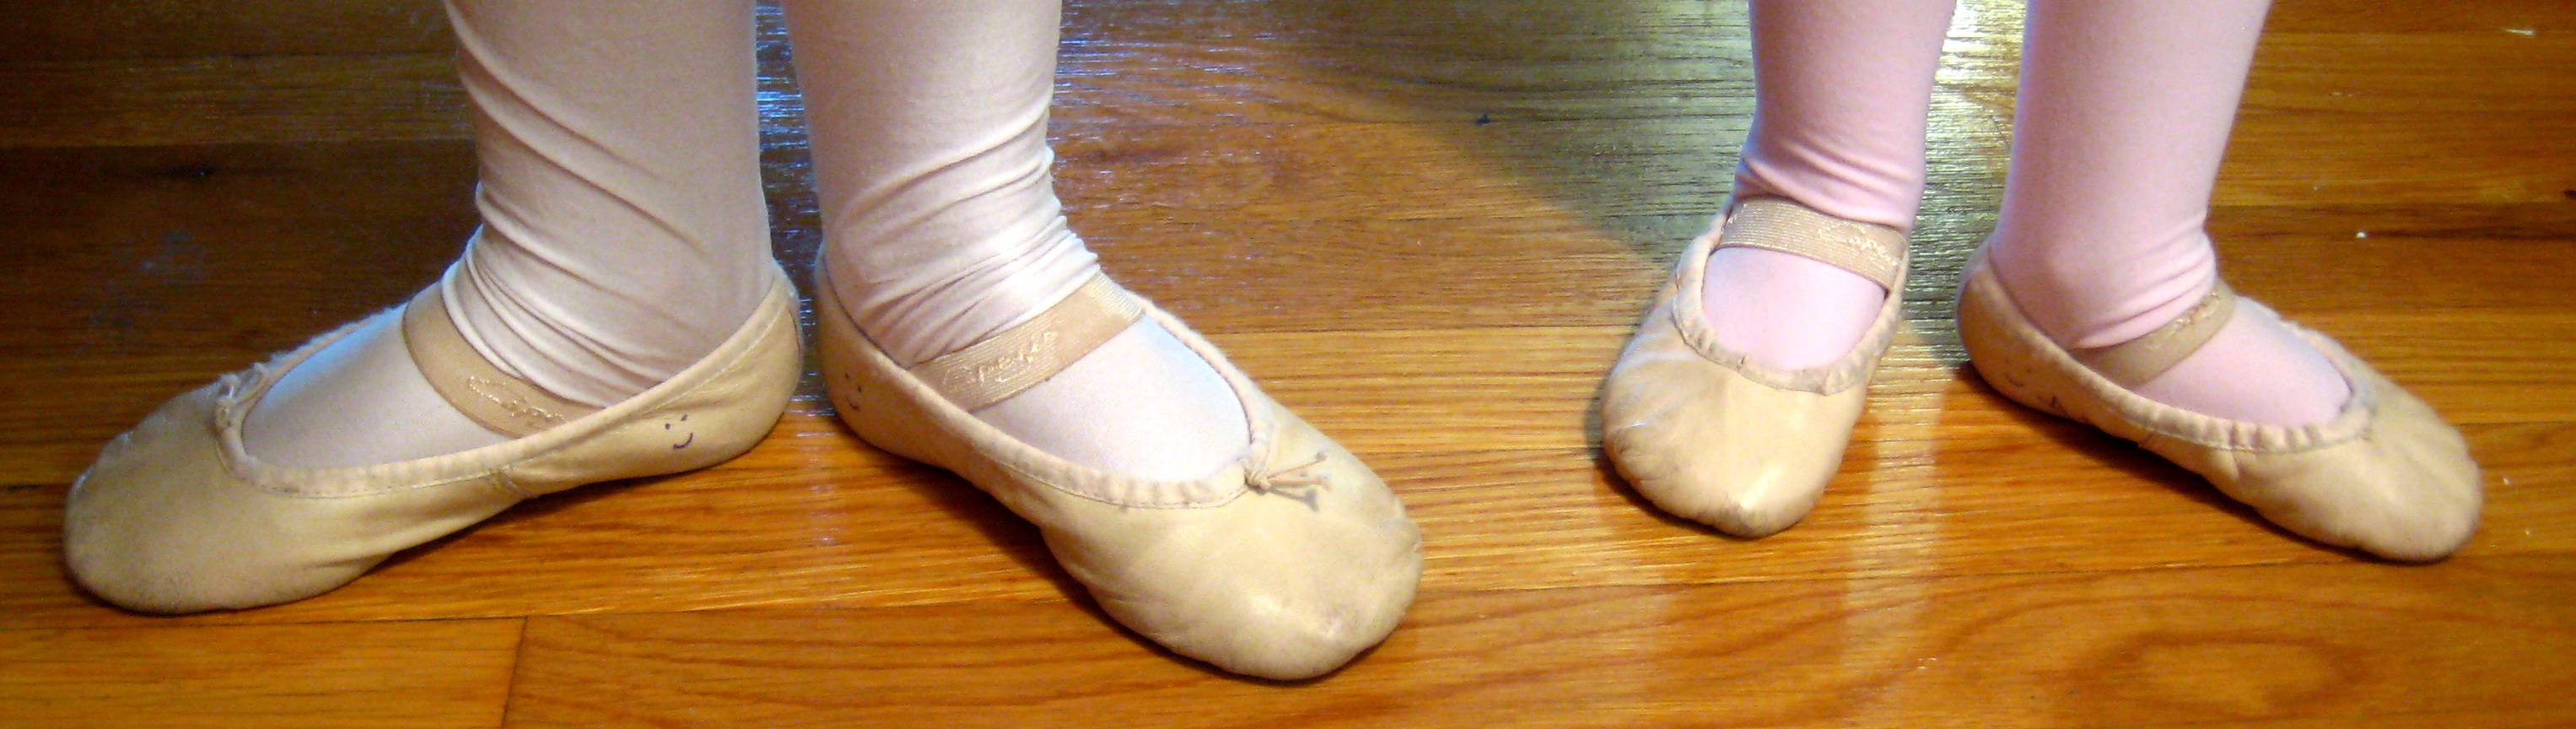 little girl ballet slippers